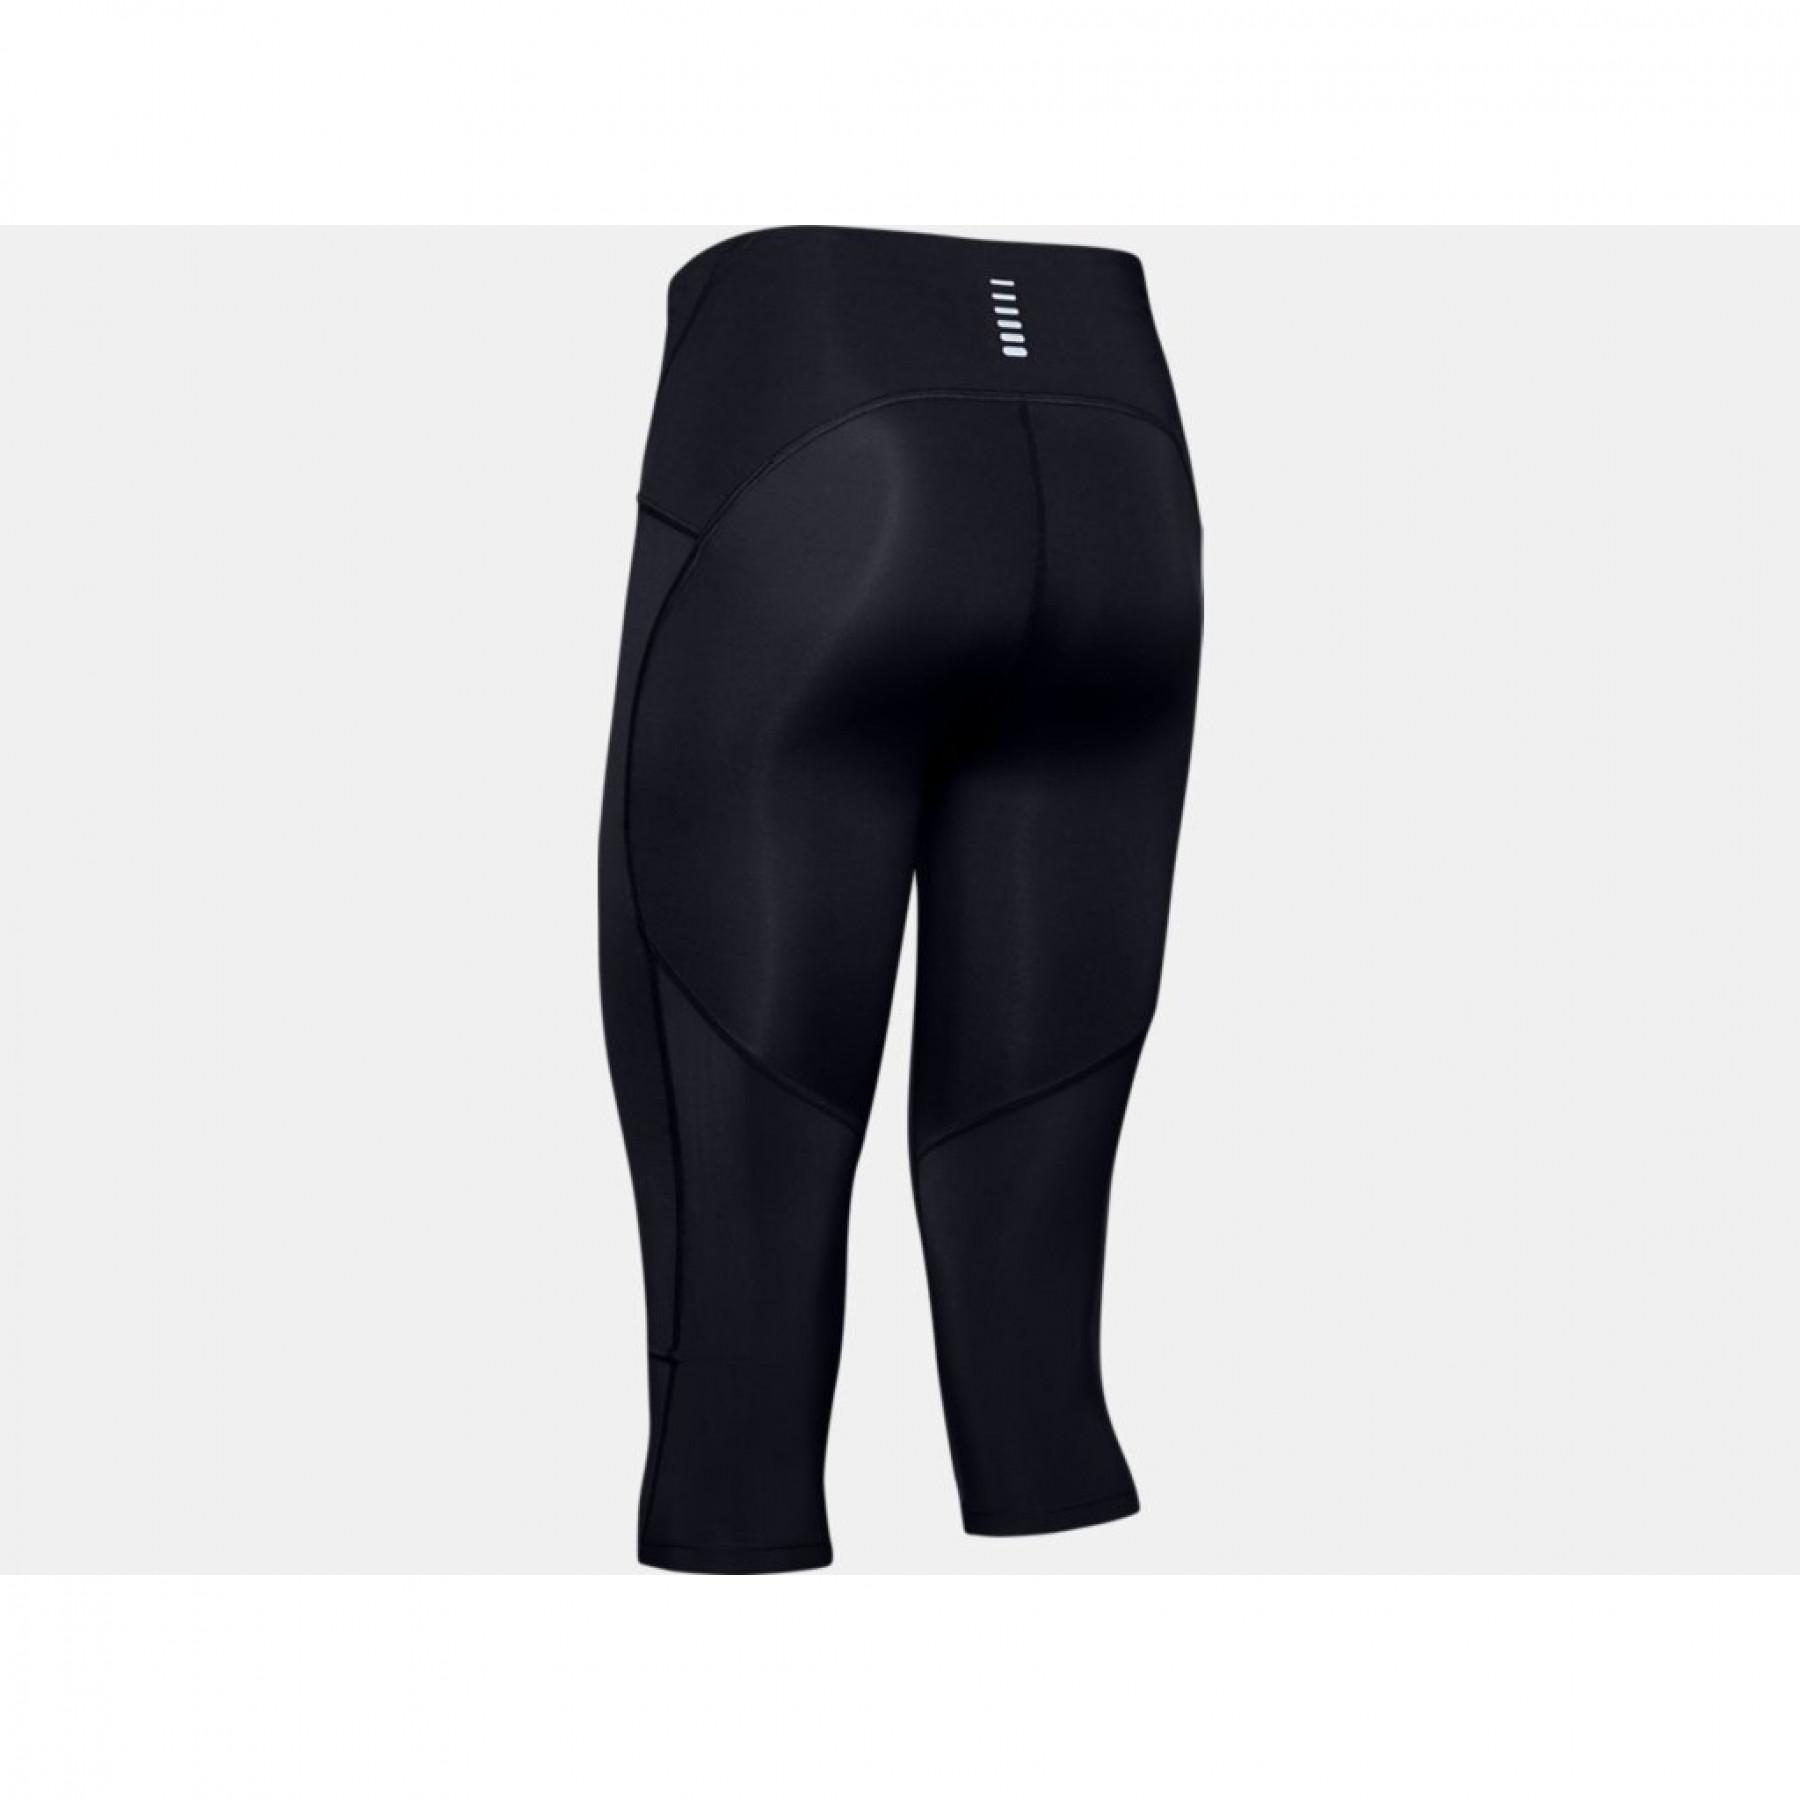 Pantalon Under Armour Sport Woven pour femme - Noir - 1348447-001